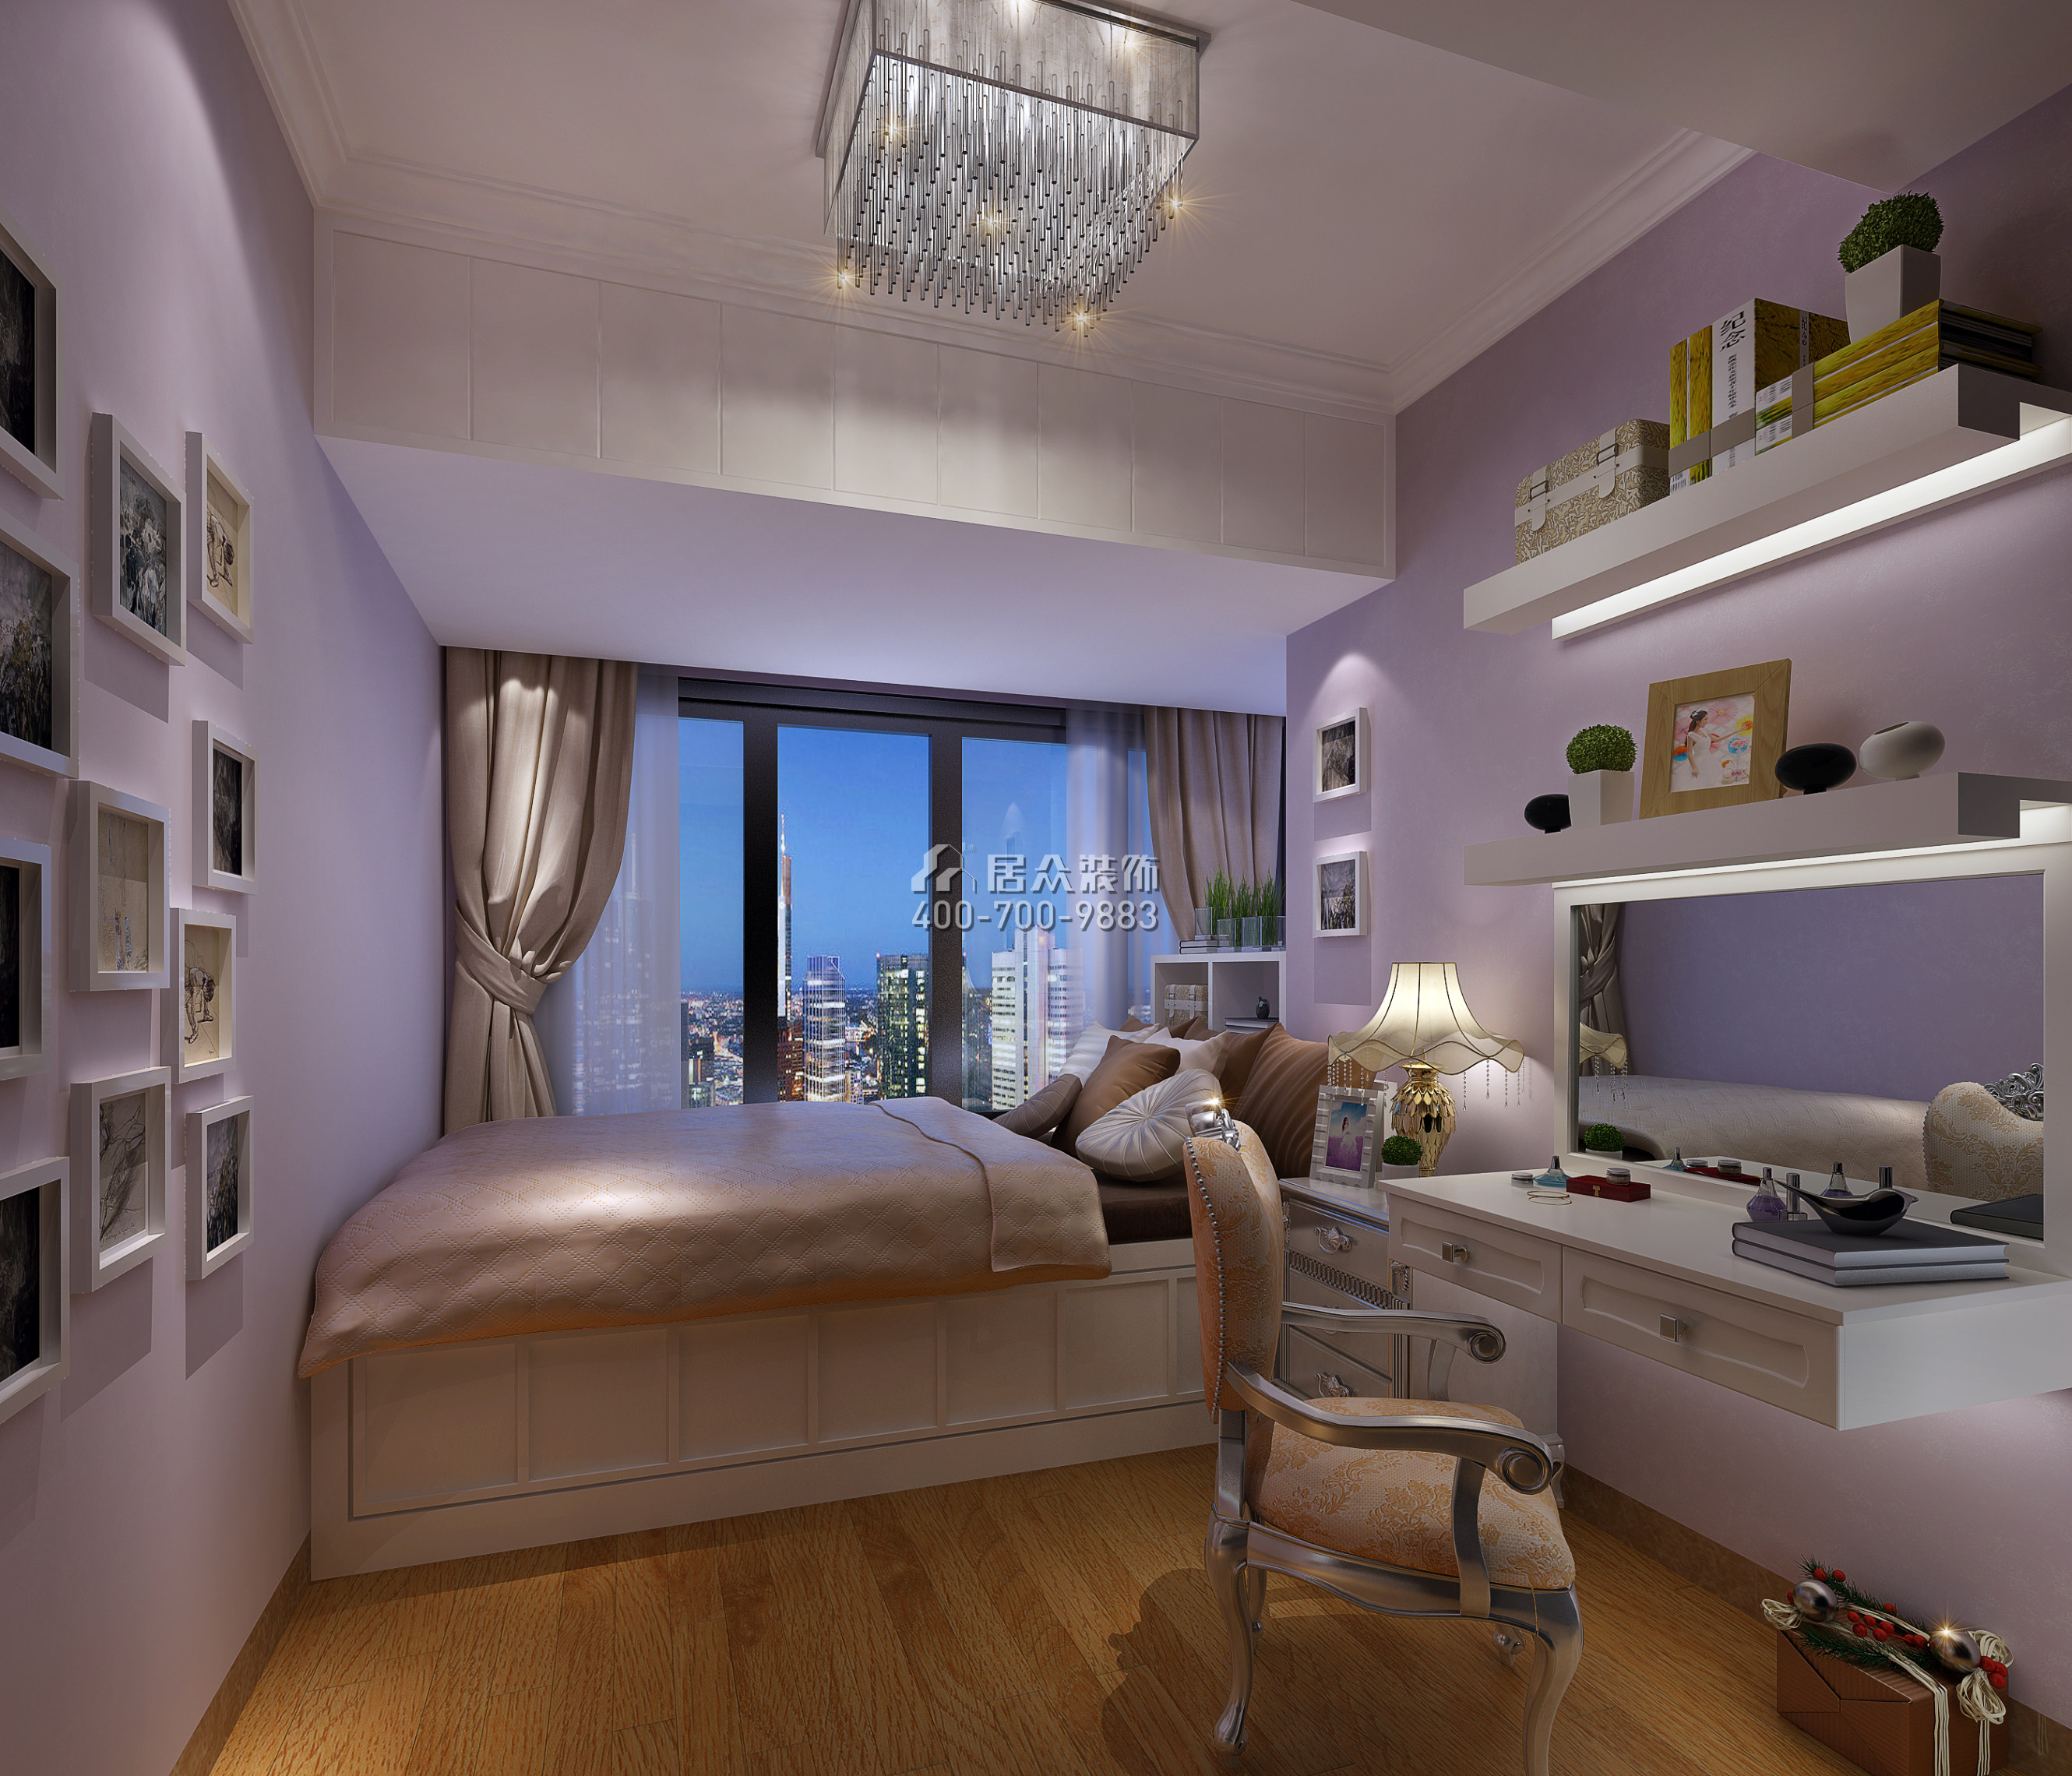 大运城邦一期176平方米现代简约风格平层户型卧室书房一体装修效果图